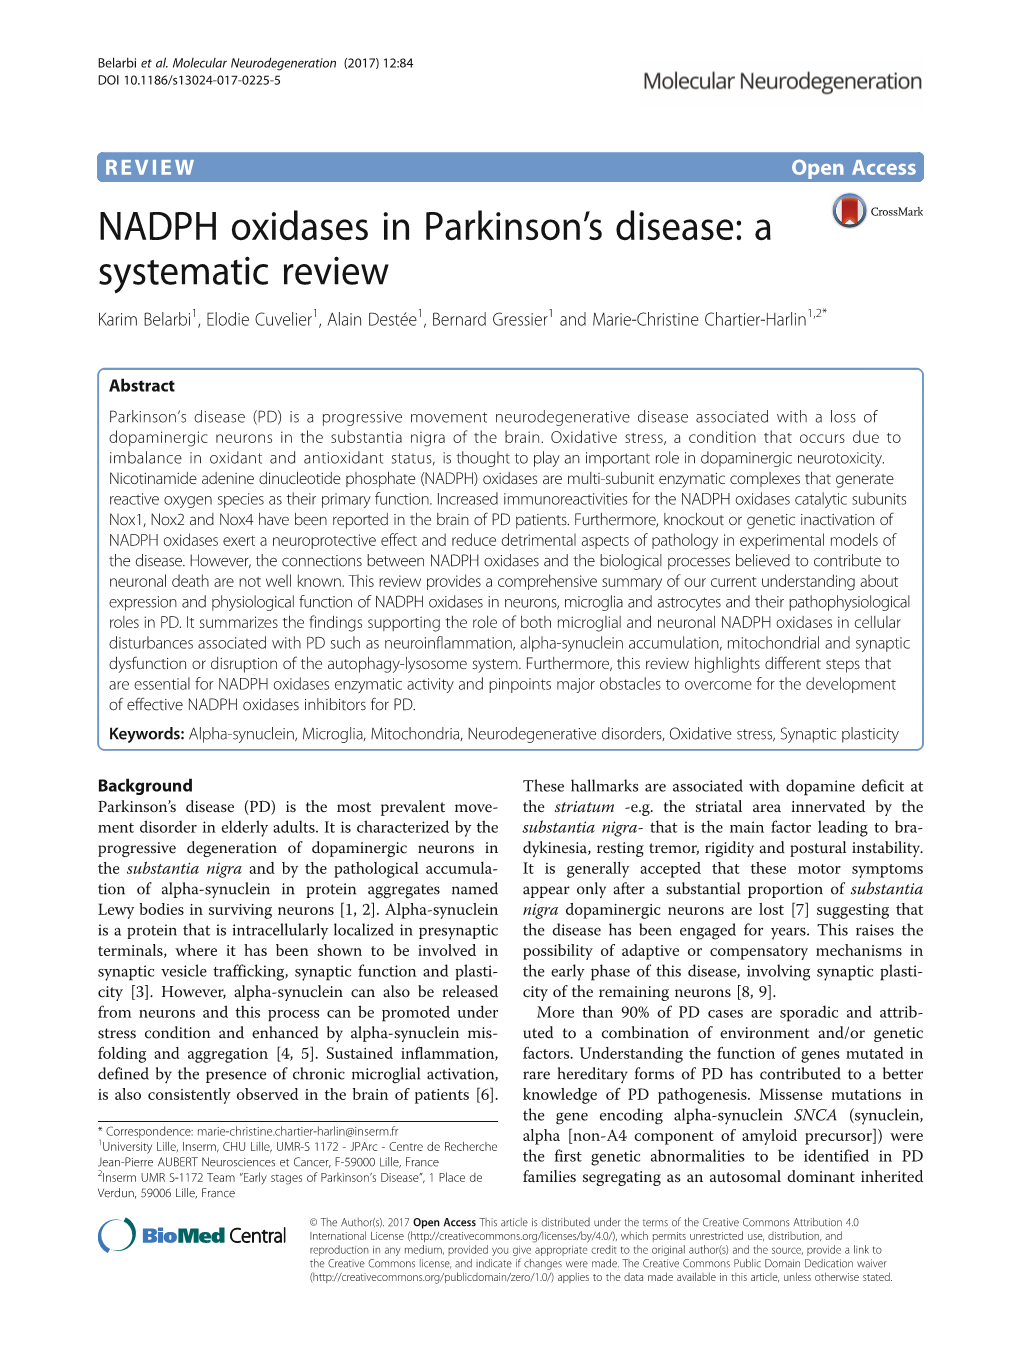 NADPH Oxidases in Parkinson's Disease